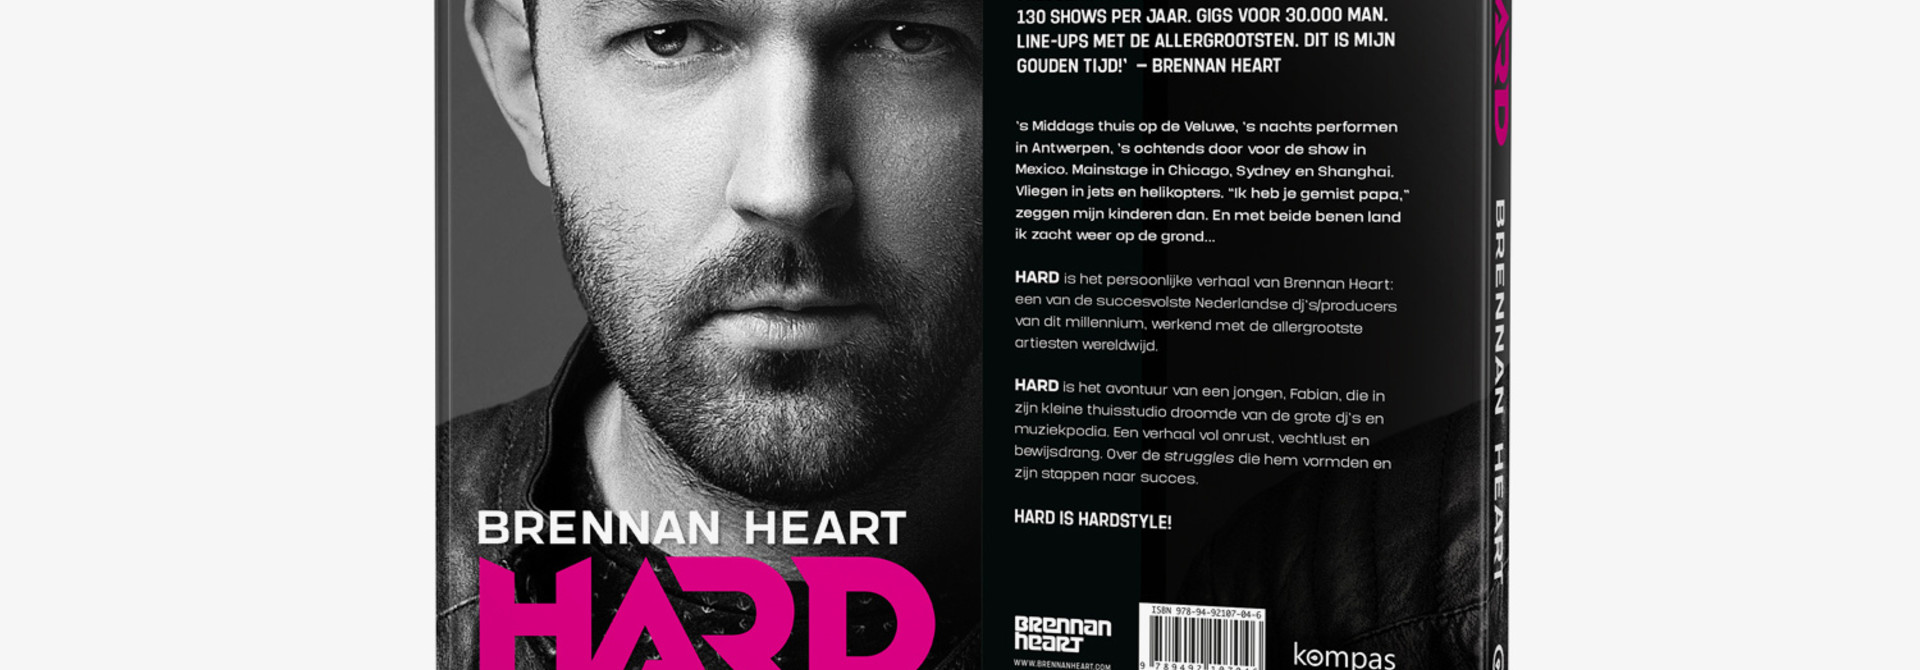 Brennan Heart "HARD" (Book)